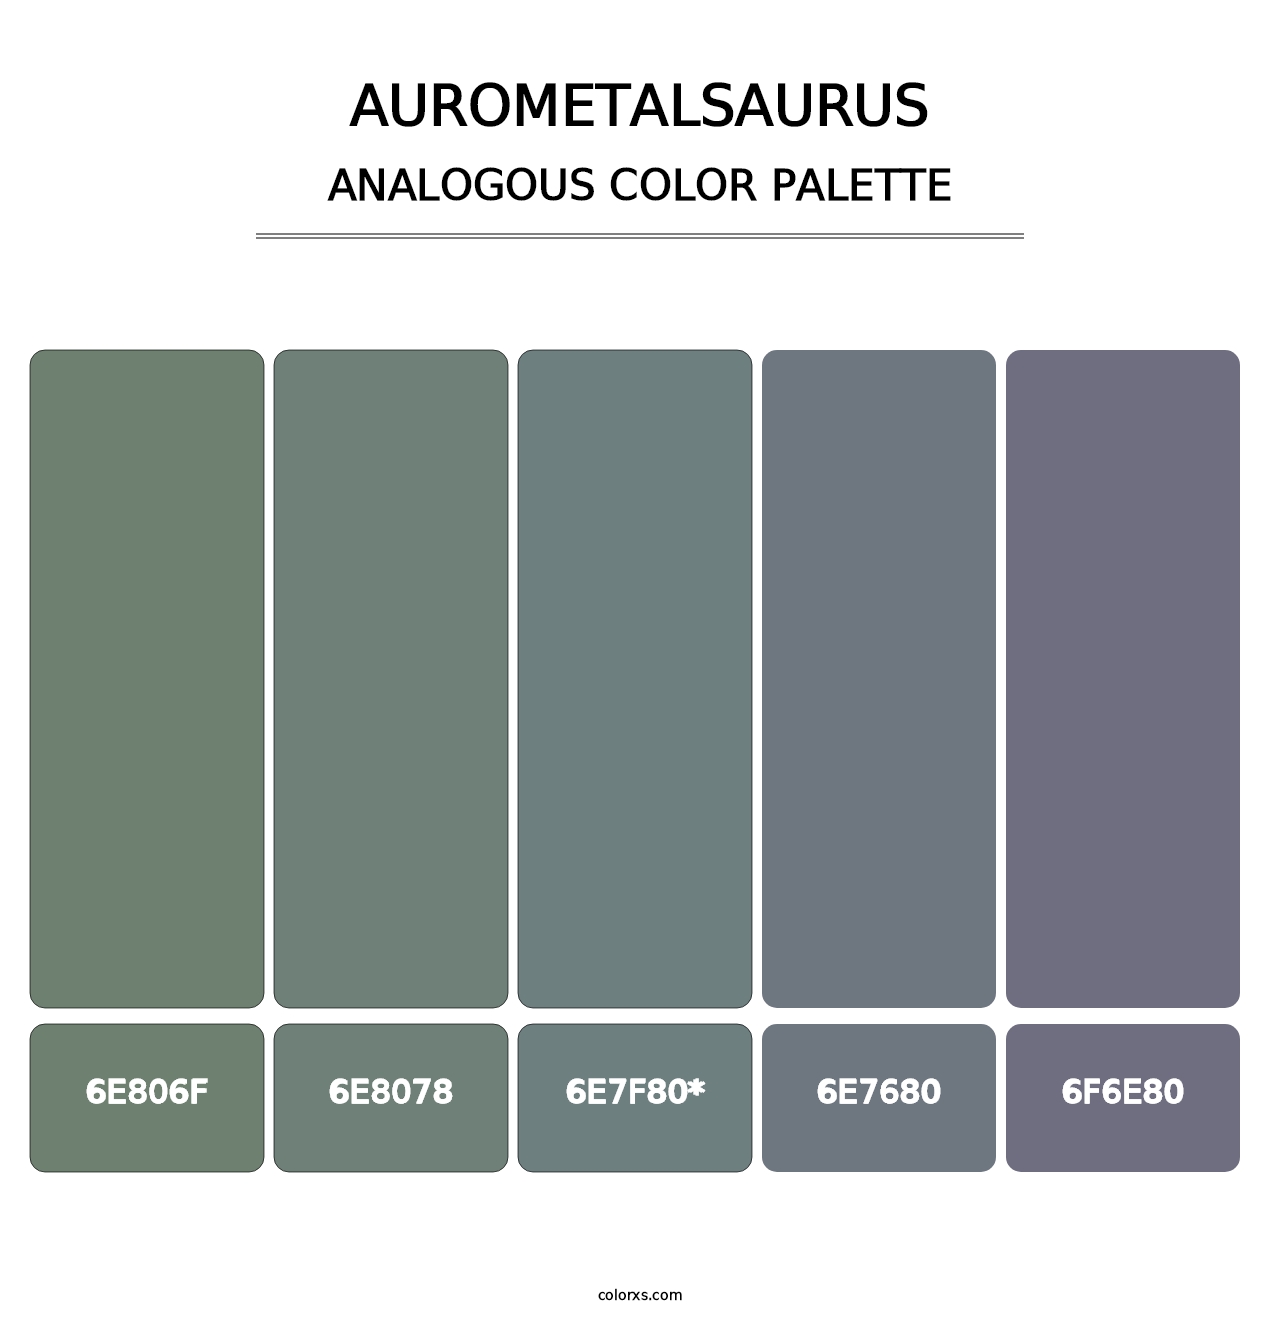 AuroMetalSaurus - Analogous Color Palette